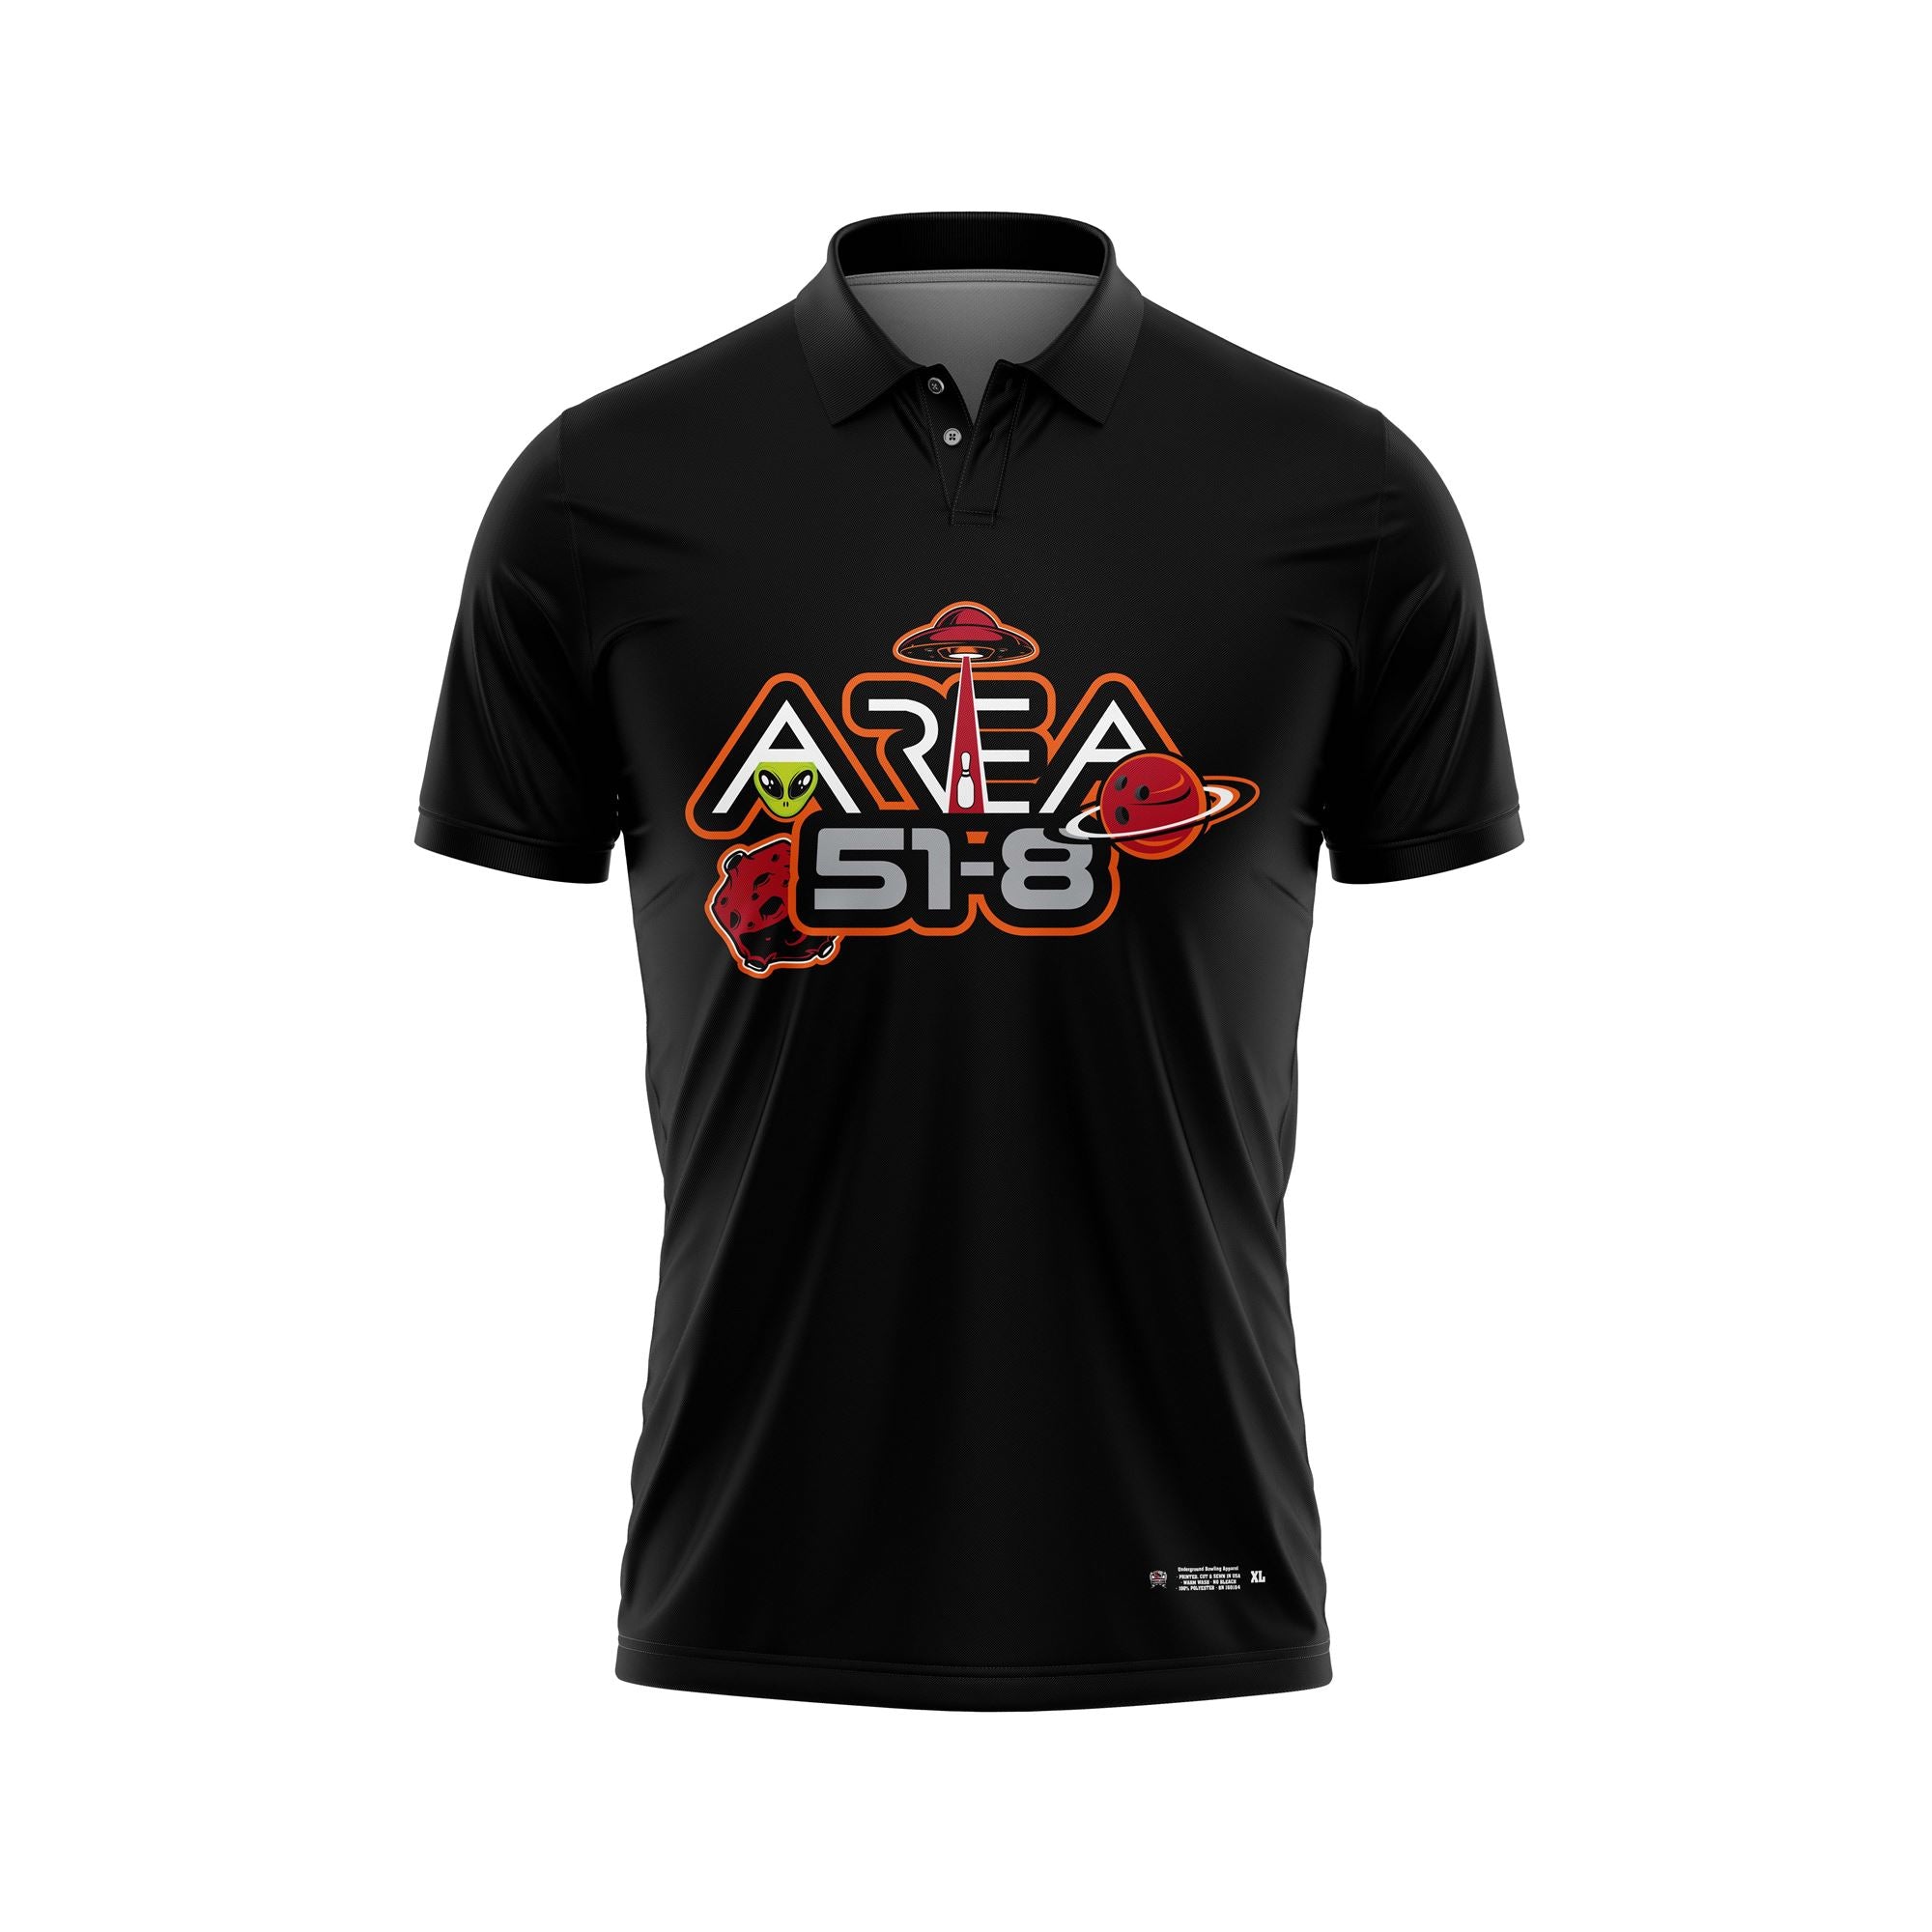 Area 51-8 Black Jerseys